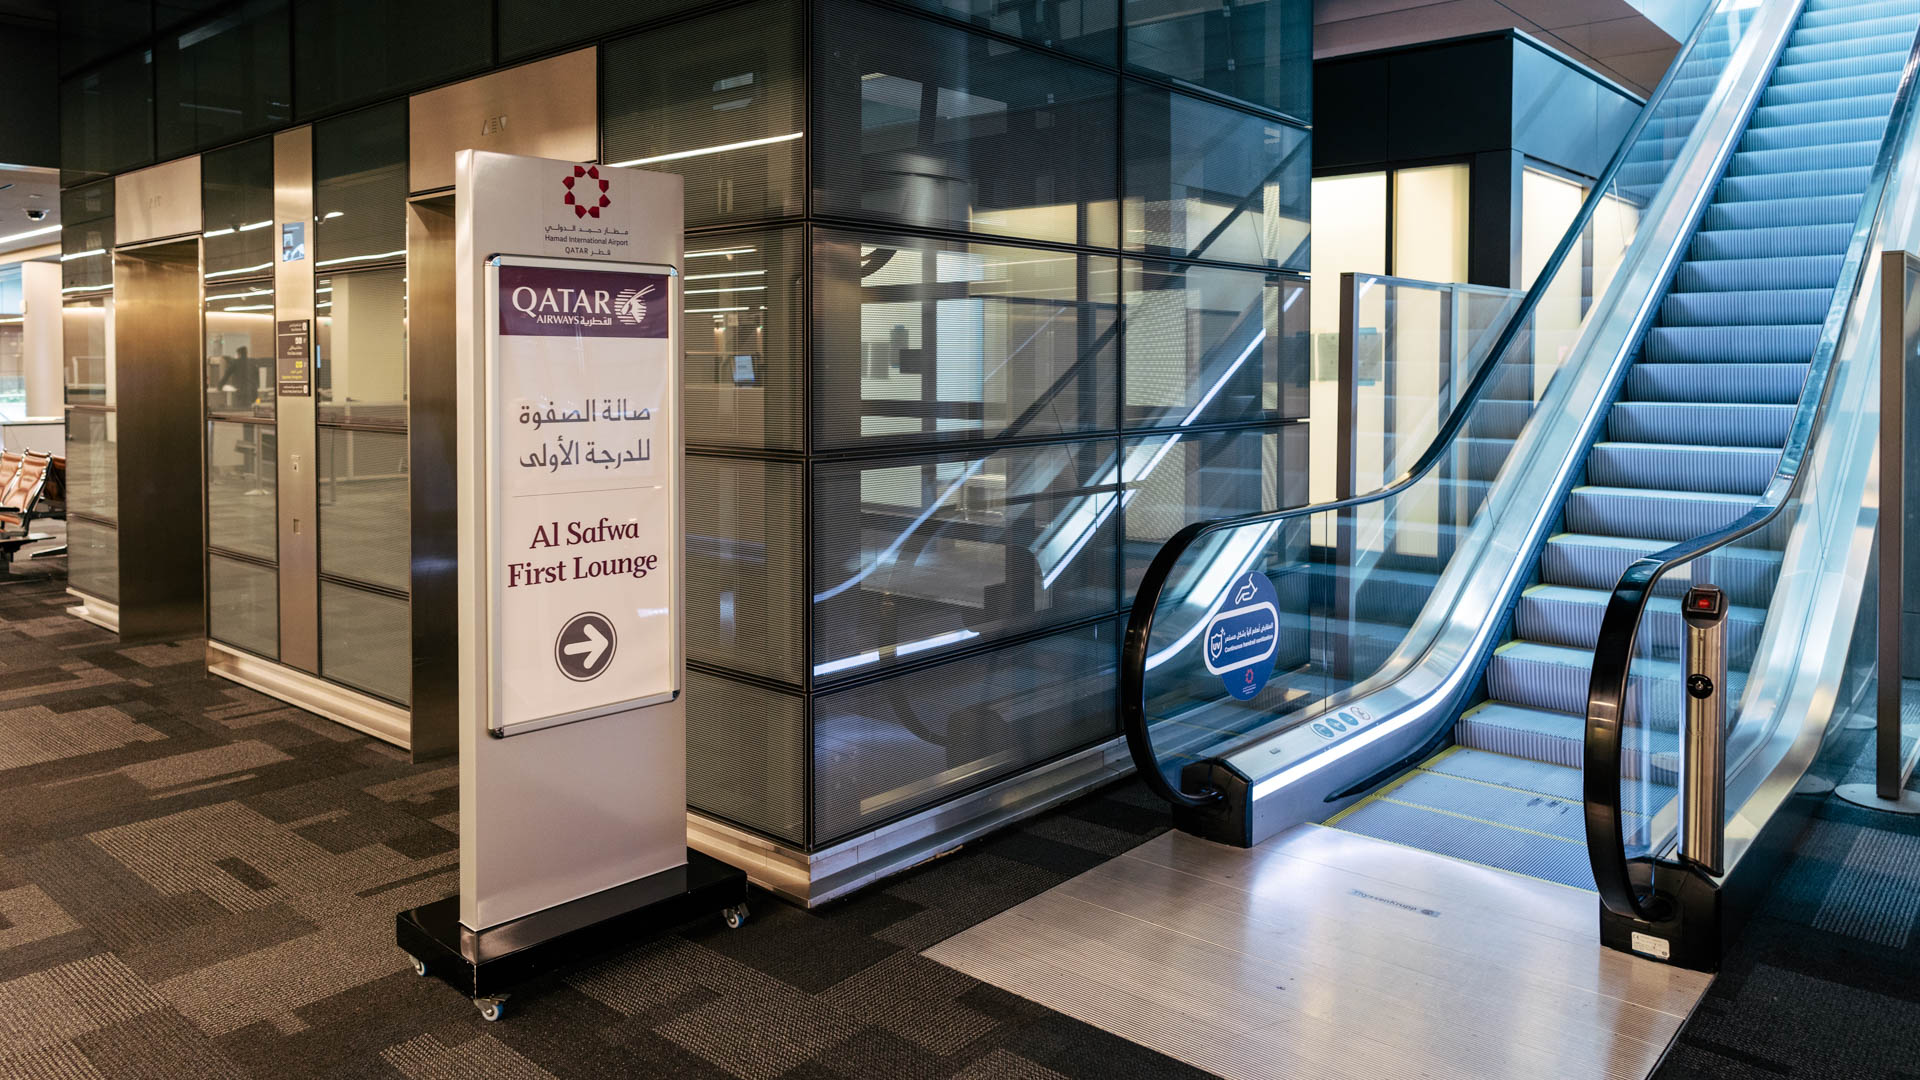 Qatar Airways Al Safwa Lounge escalator